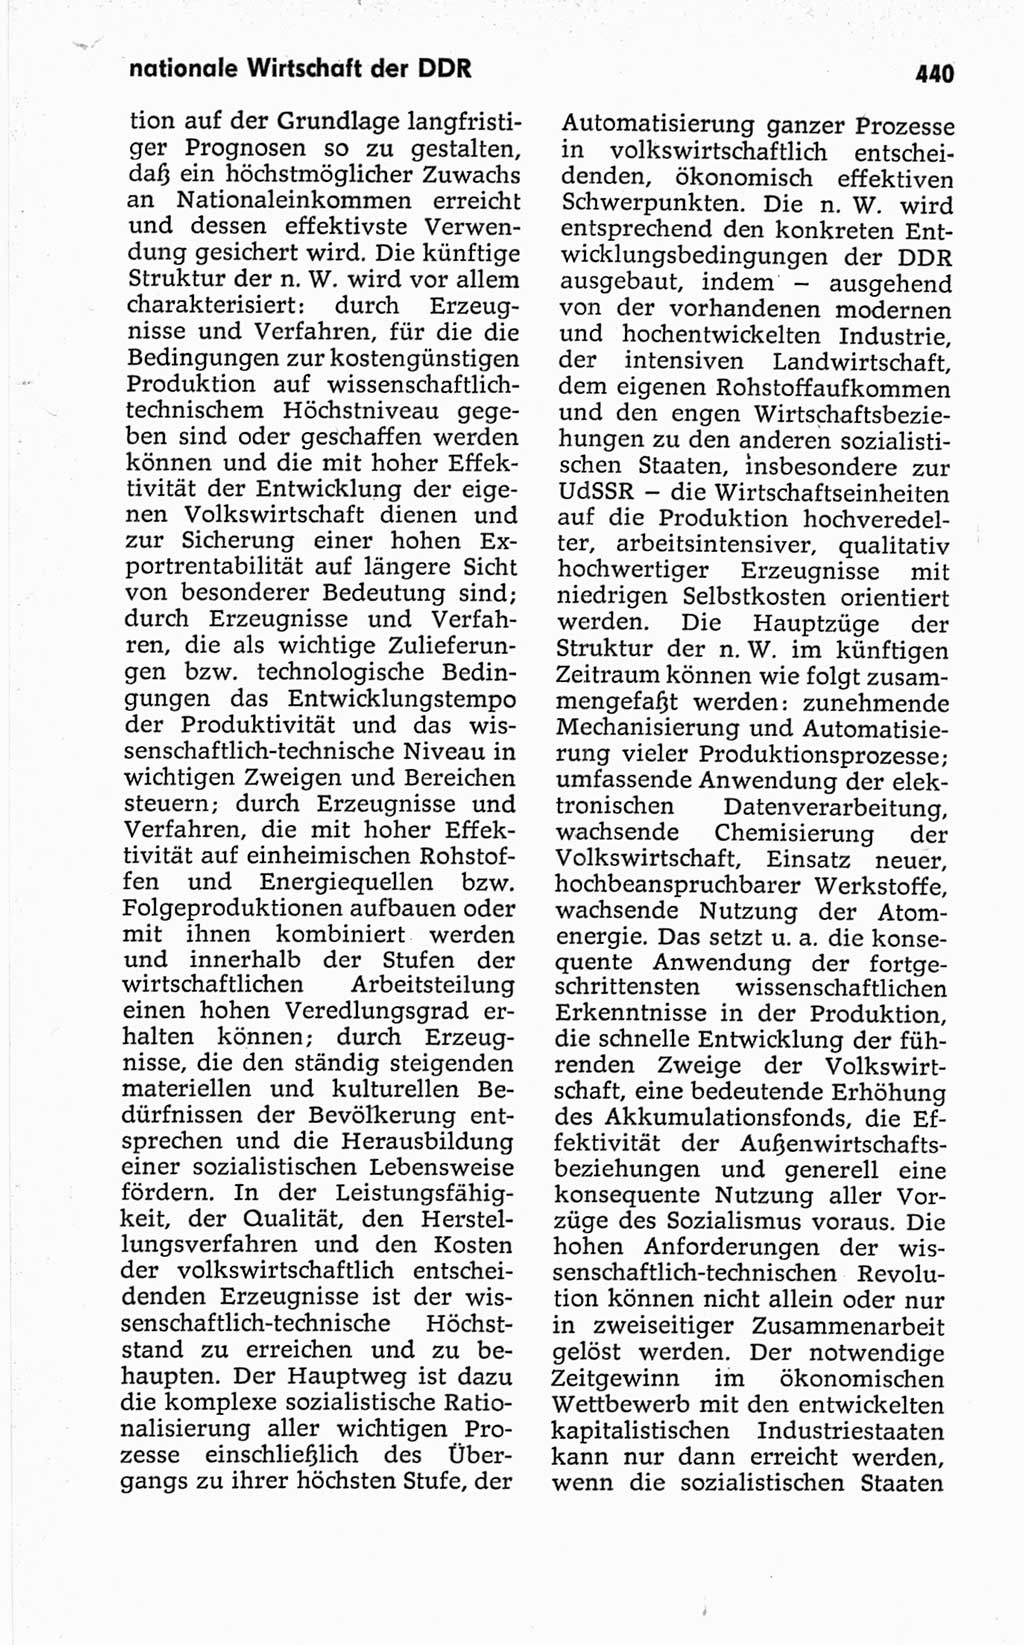 Kleines politisches Wörterbuch [Deutsche Demokratische Republik (DDR)] 1967, Seite 440 (Kl. pol. Wb. DDR 1967, S. 440)